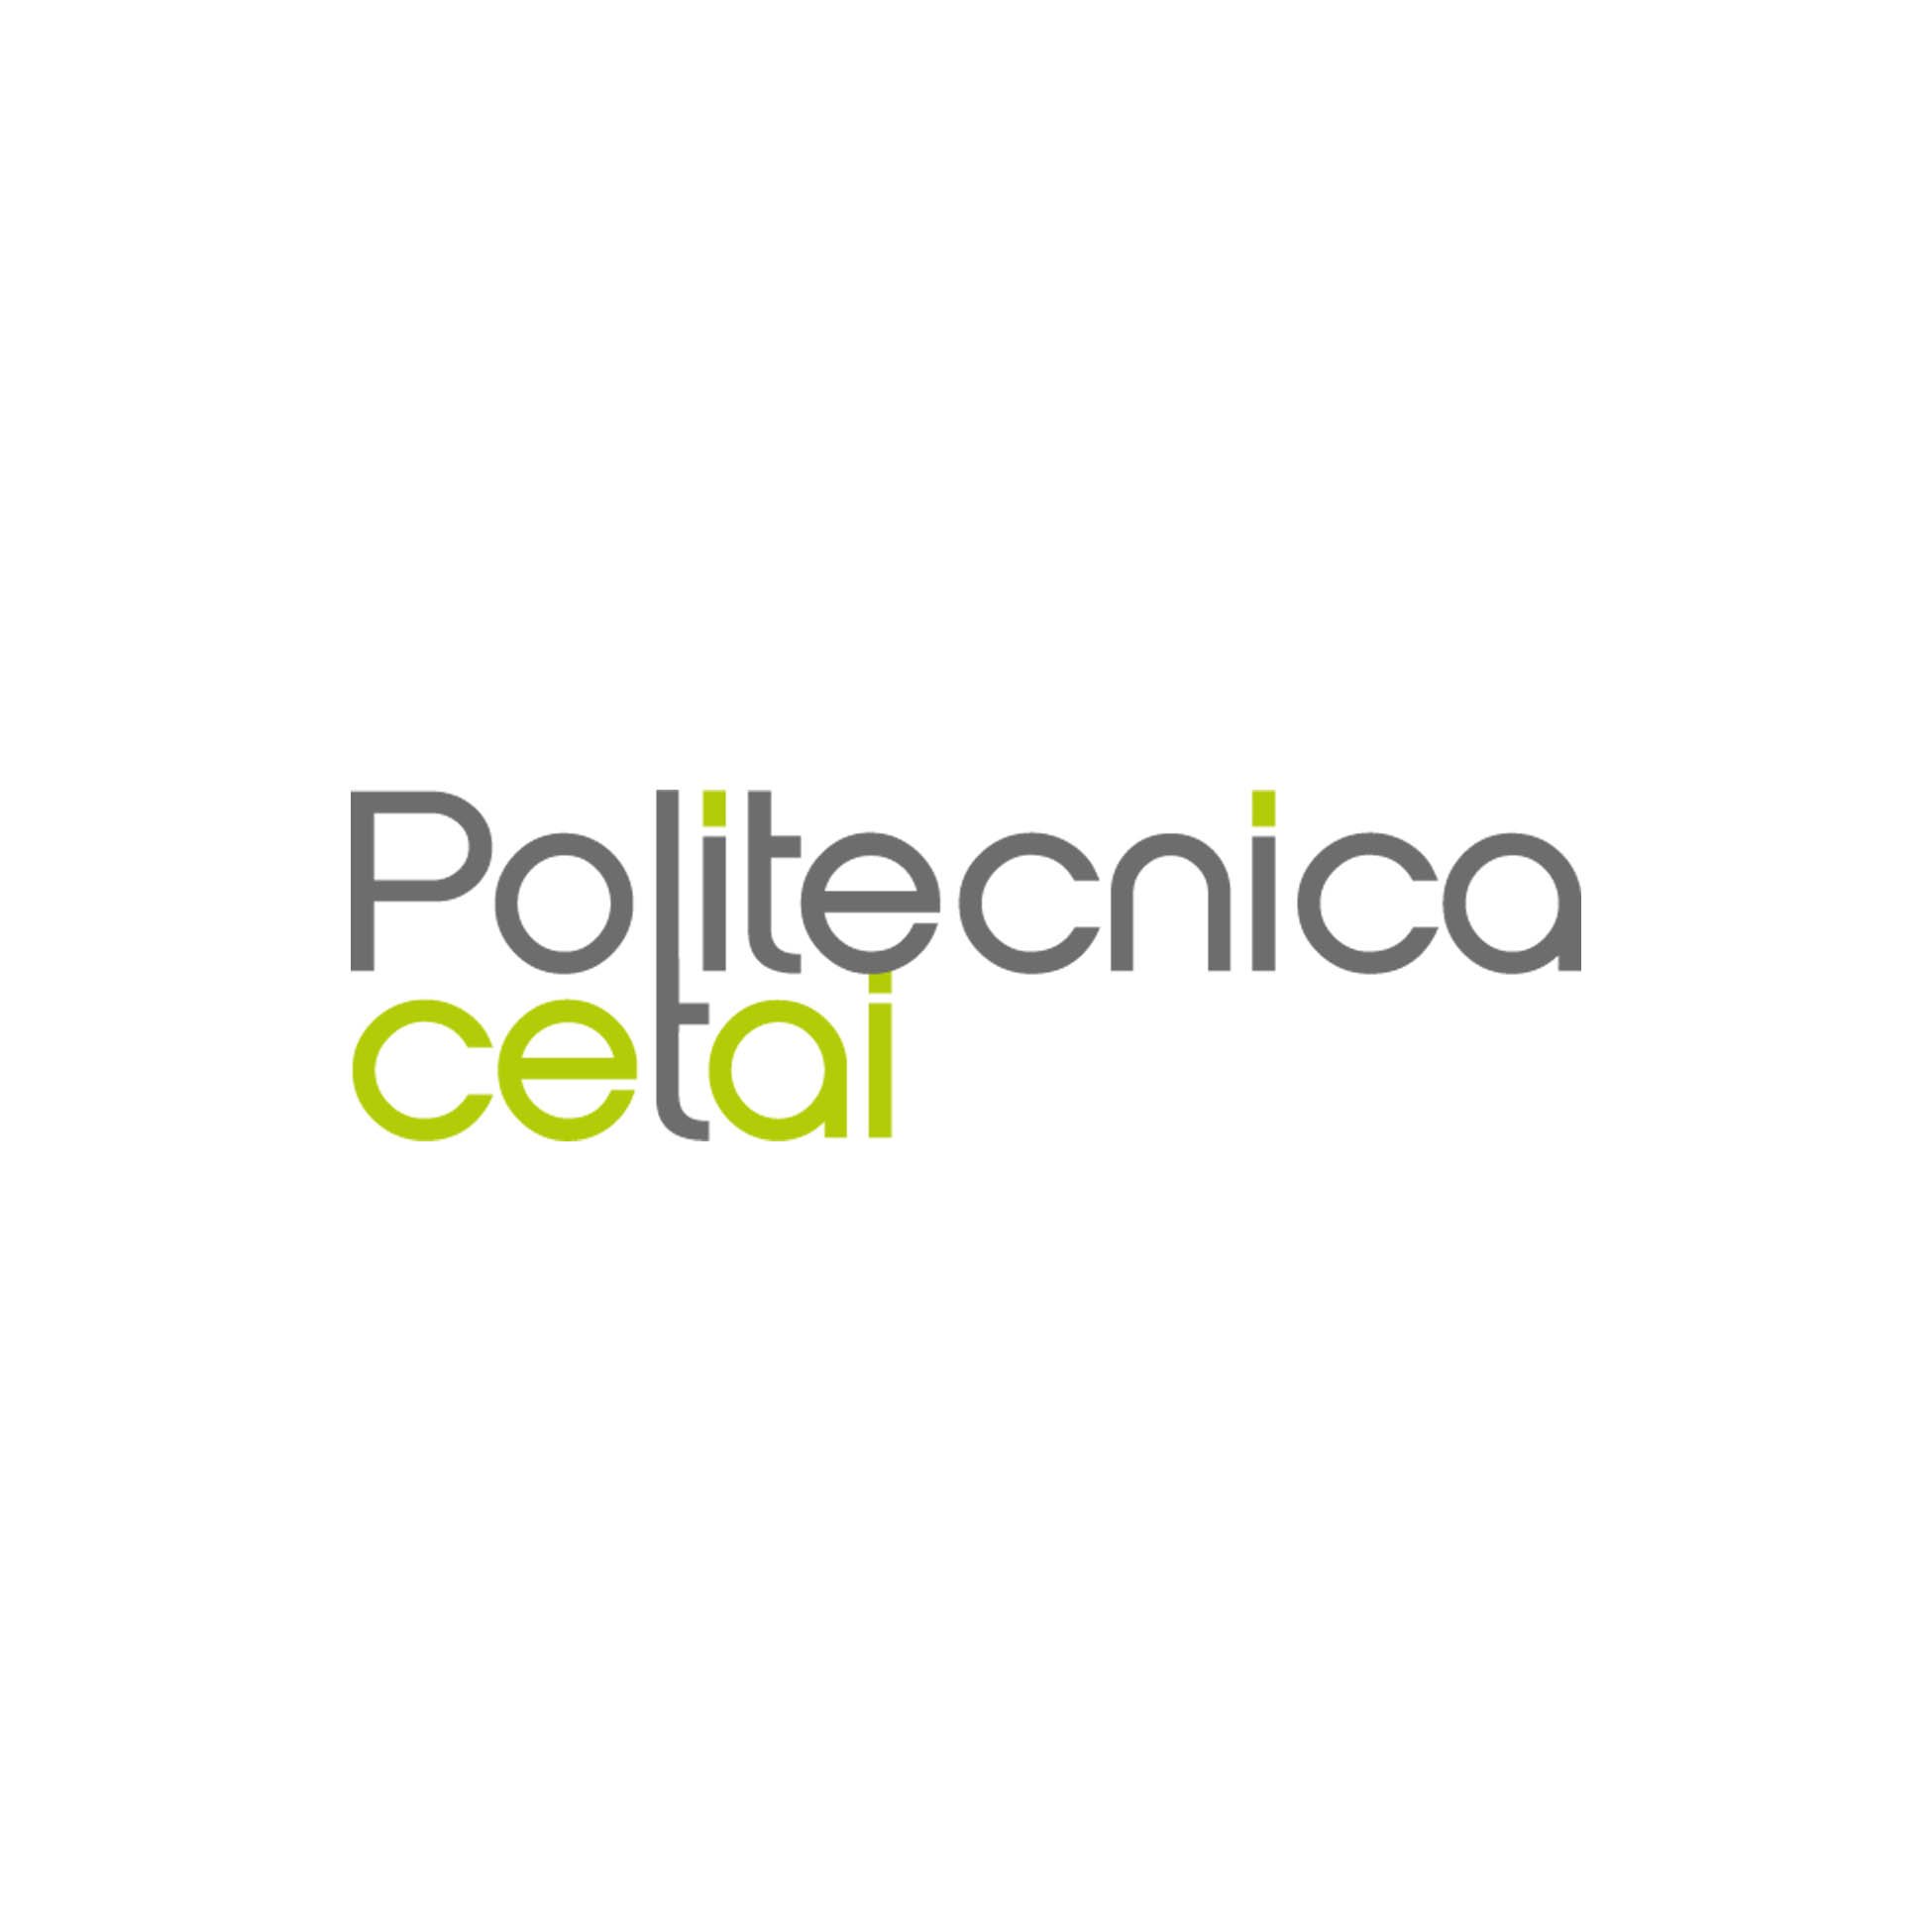 Logo politecnica